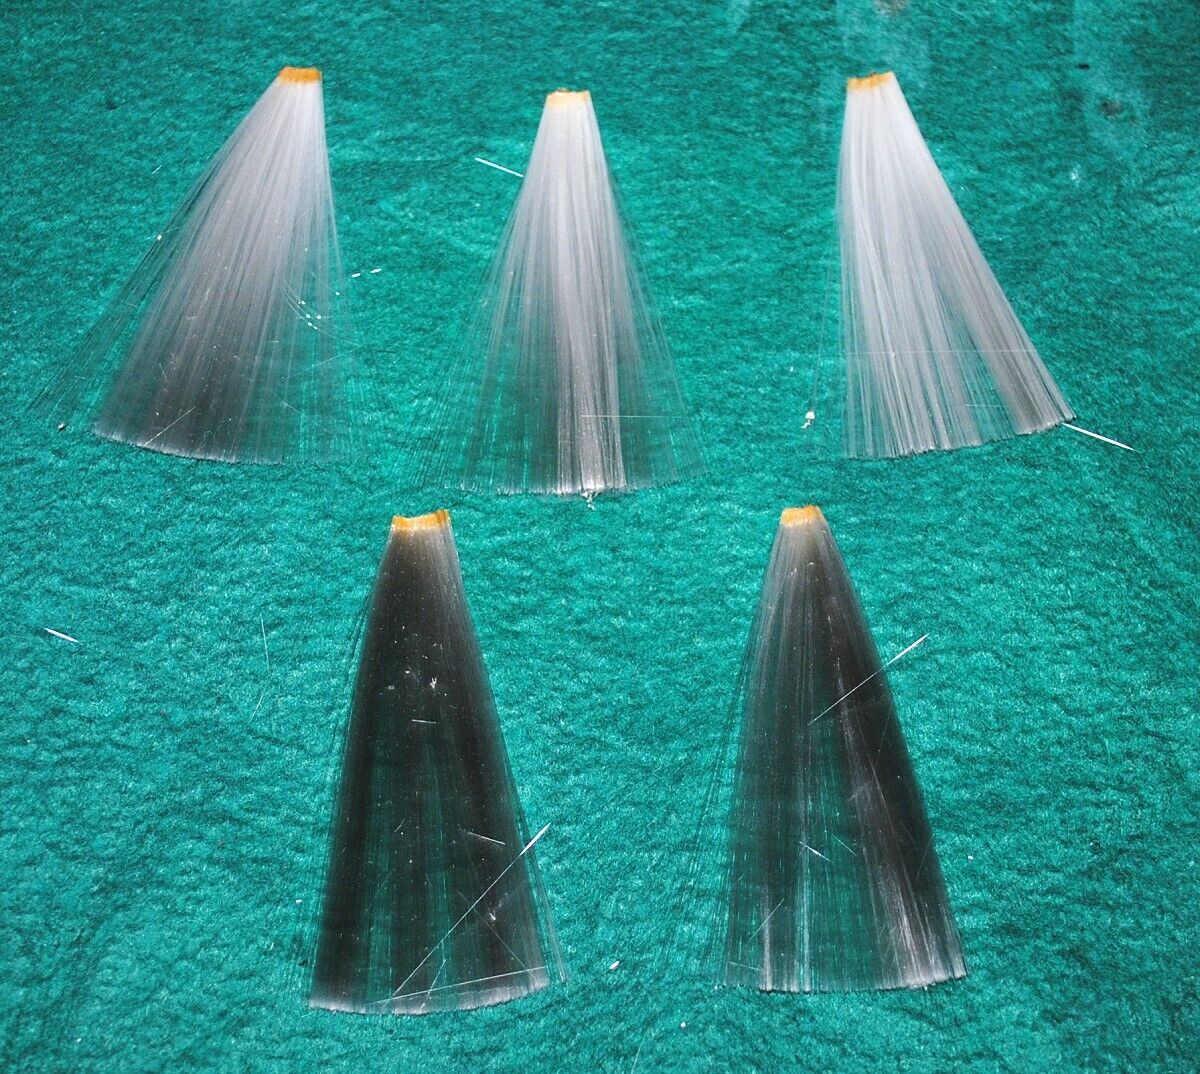 5 larger tails made of spun glass for birds, glass fibre, x-mas ornaments